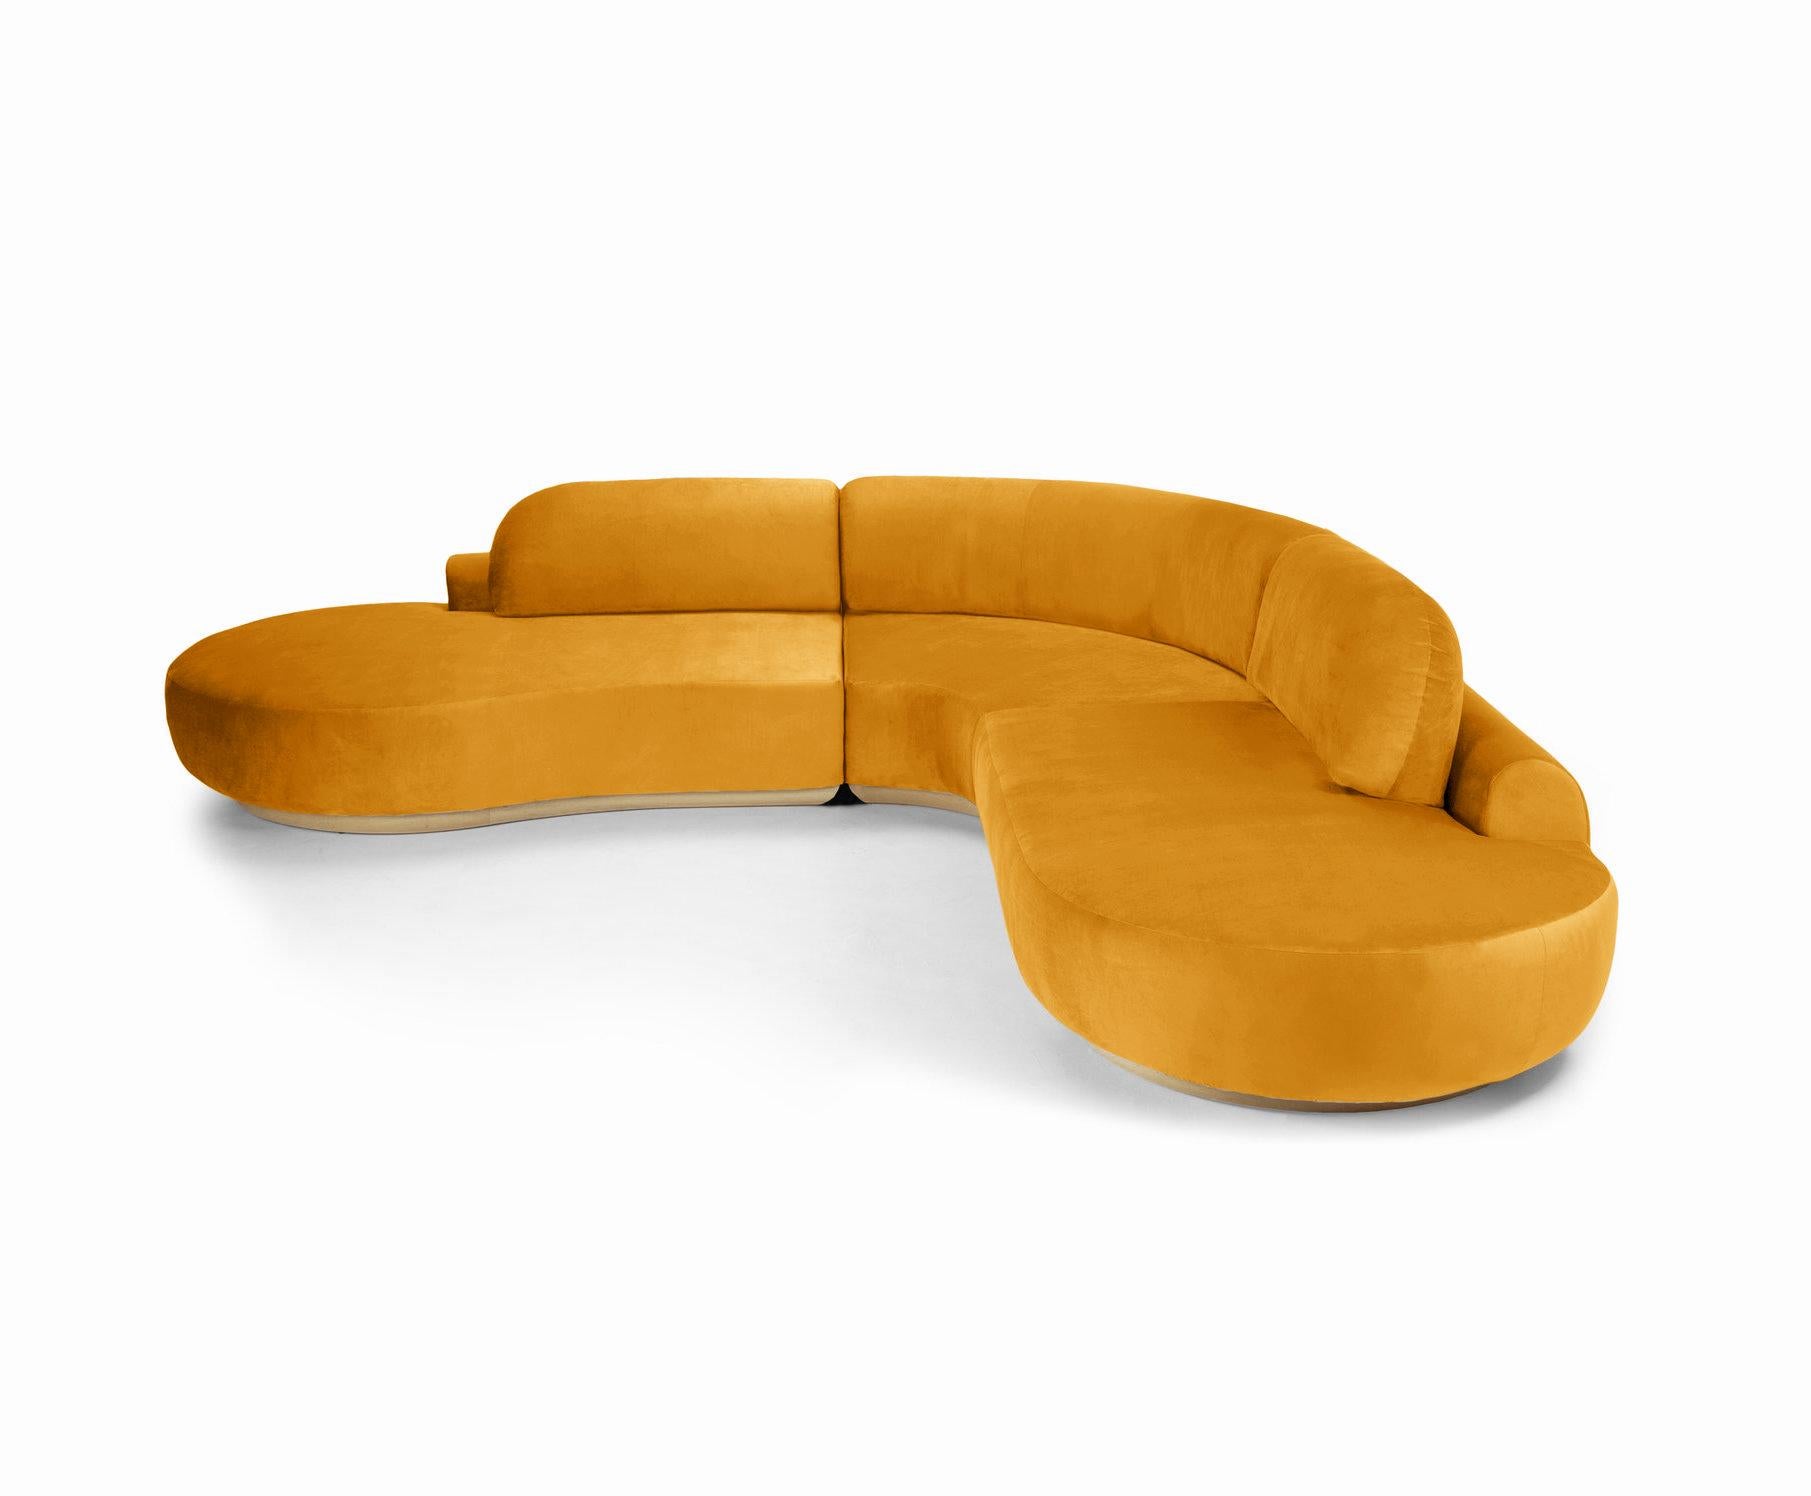 Le canapé sectionnel Naked est un canapé modulaire aux courbes invitantes et à l'assise confortable. Fabriqué à la main avec une base en bois massif. Le canapé sectionnel Naked est disponible dans un certain nombre de matériaux, de finitions et de